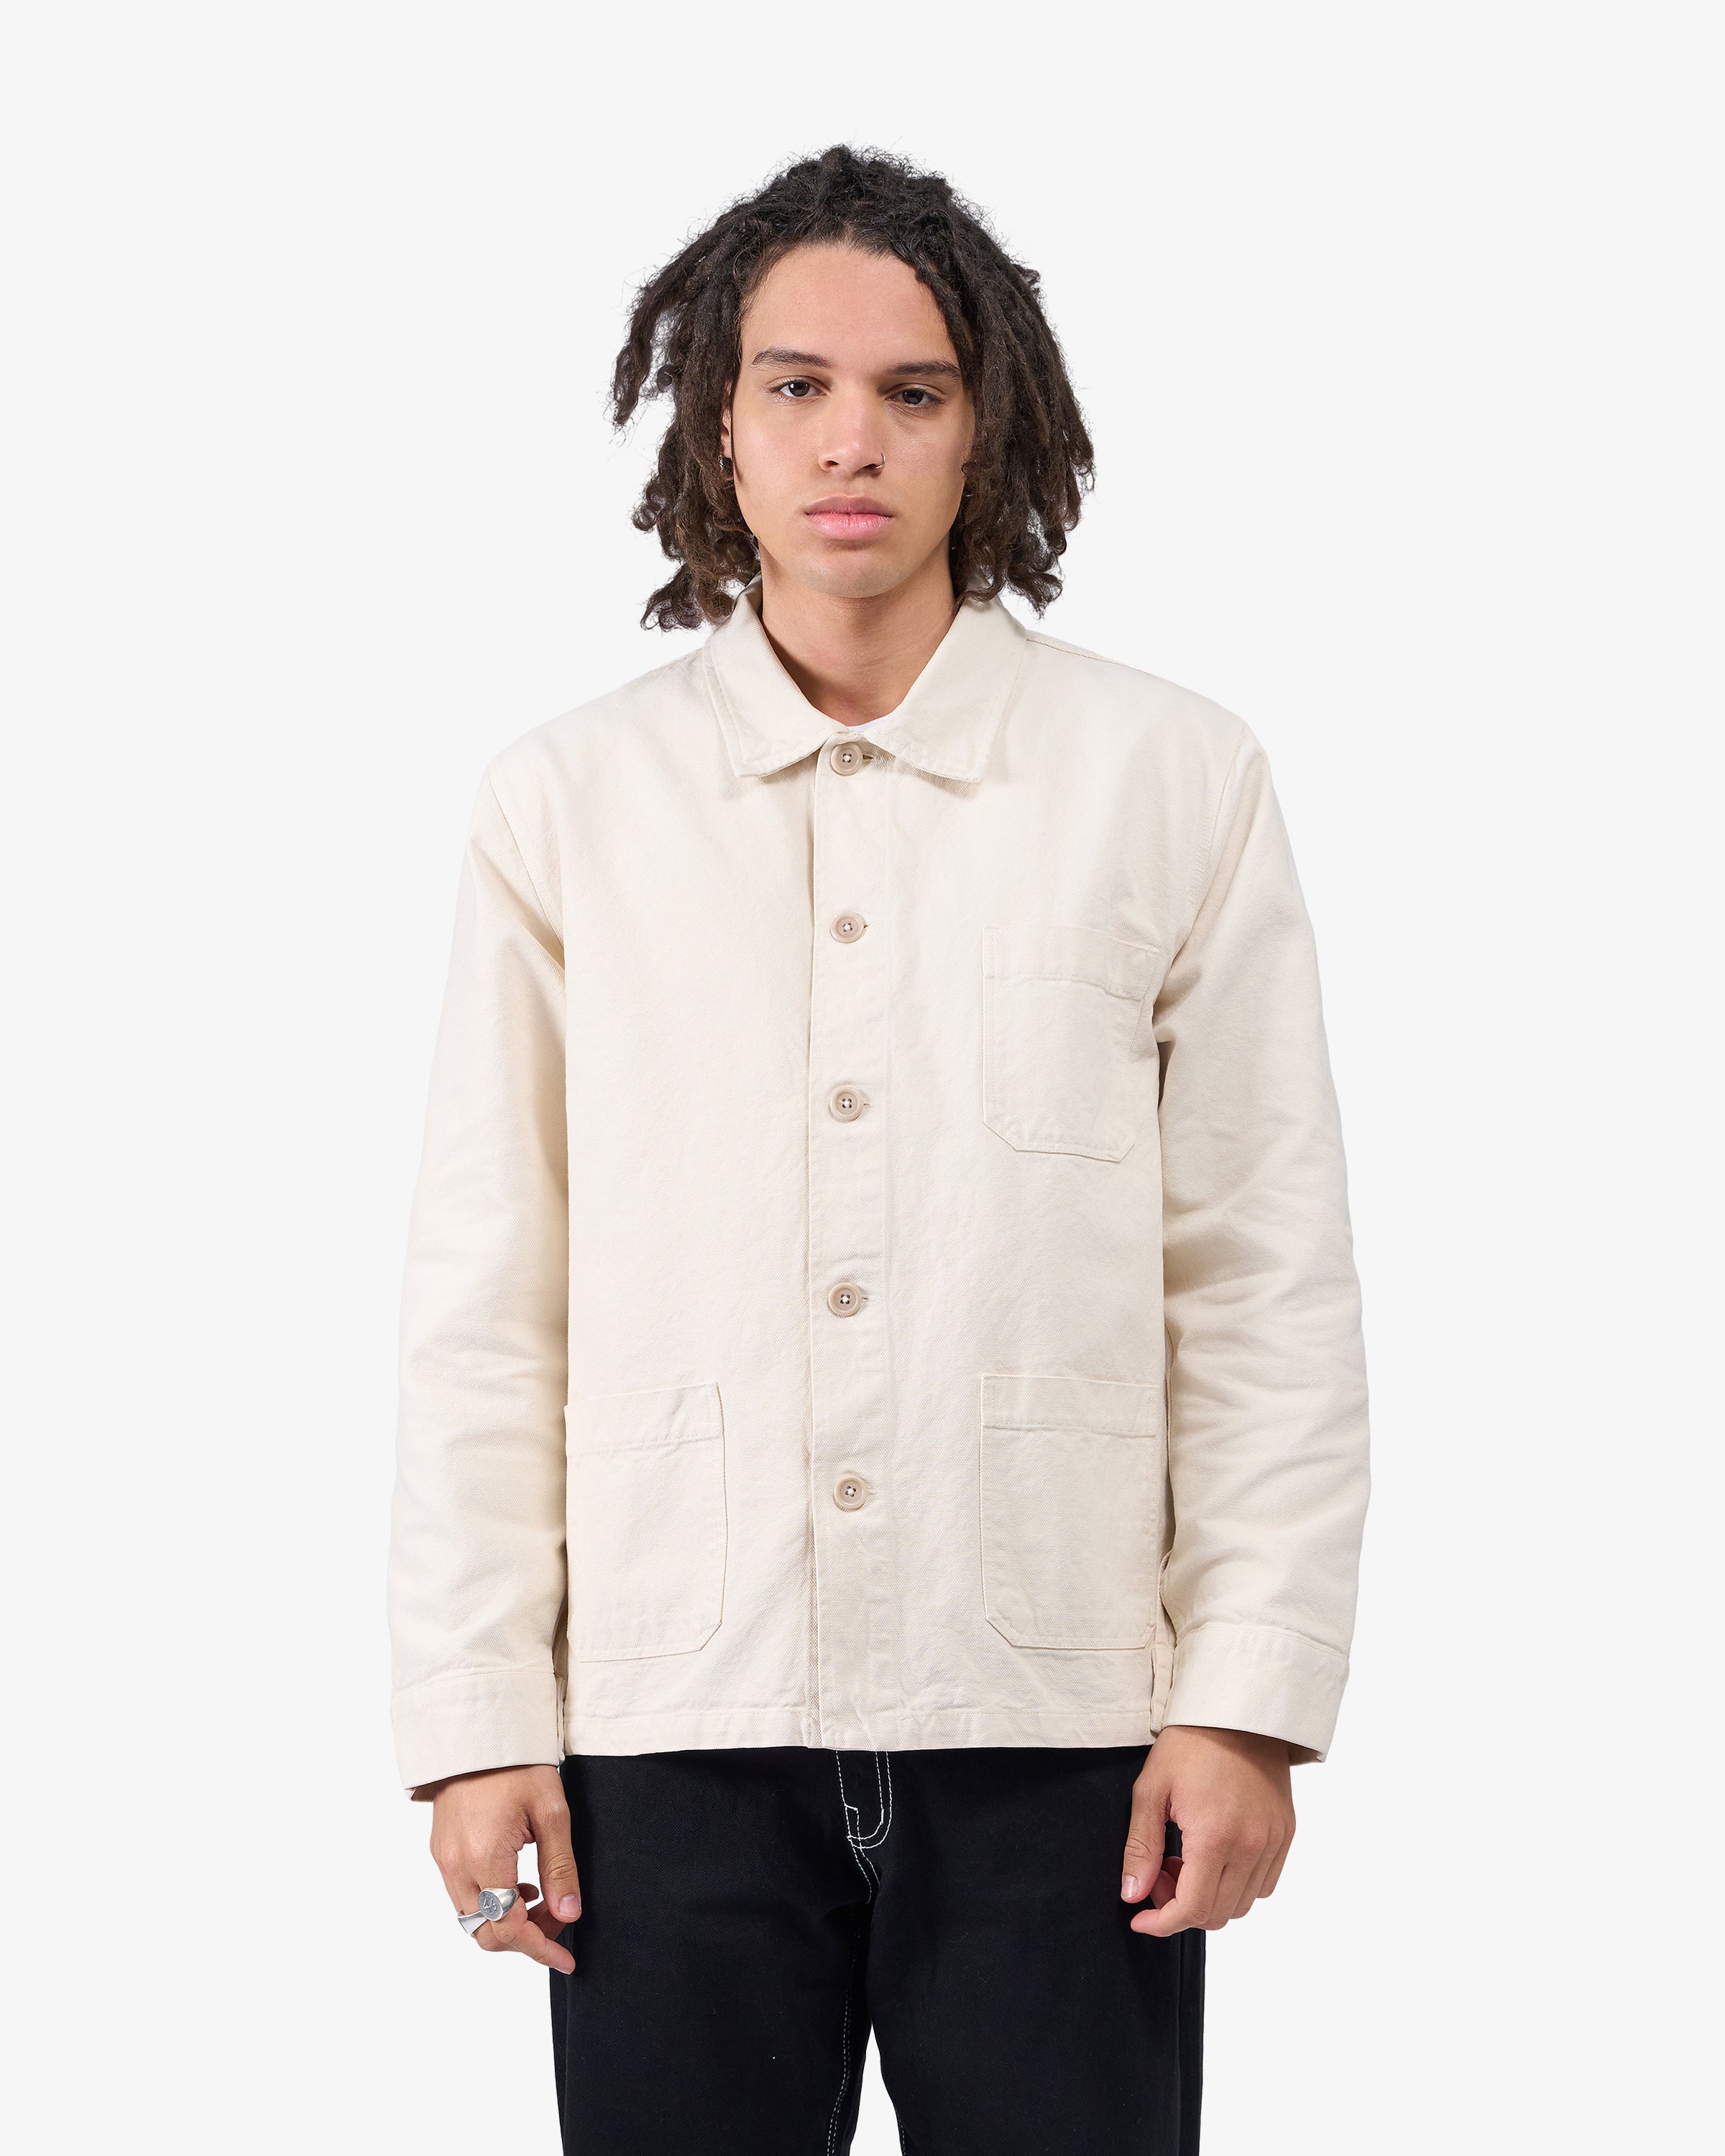 Organic Workwear Jacket - Ivory White